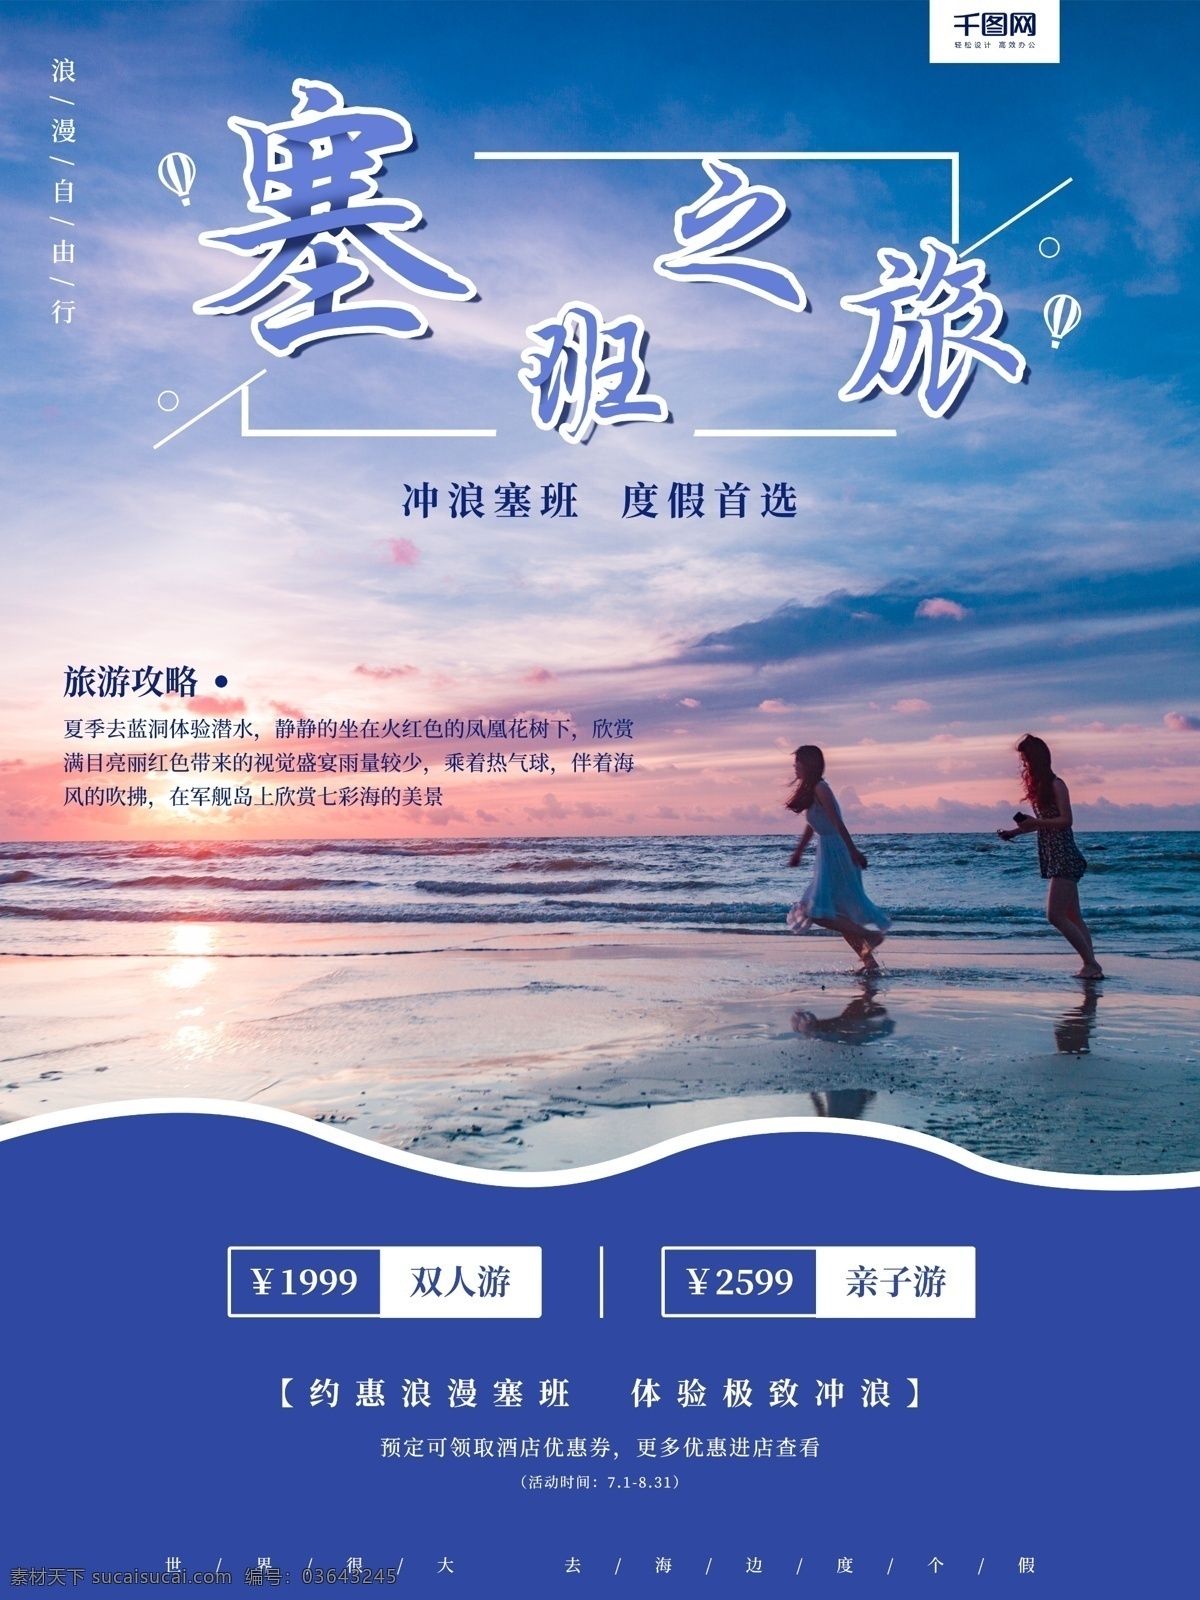 塞班 海边 海岛 度假旅游 海报 沙滩 度假 旅游海报 宣传 促销 海 李春燕 度假海报